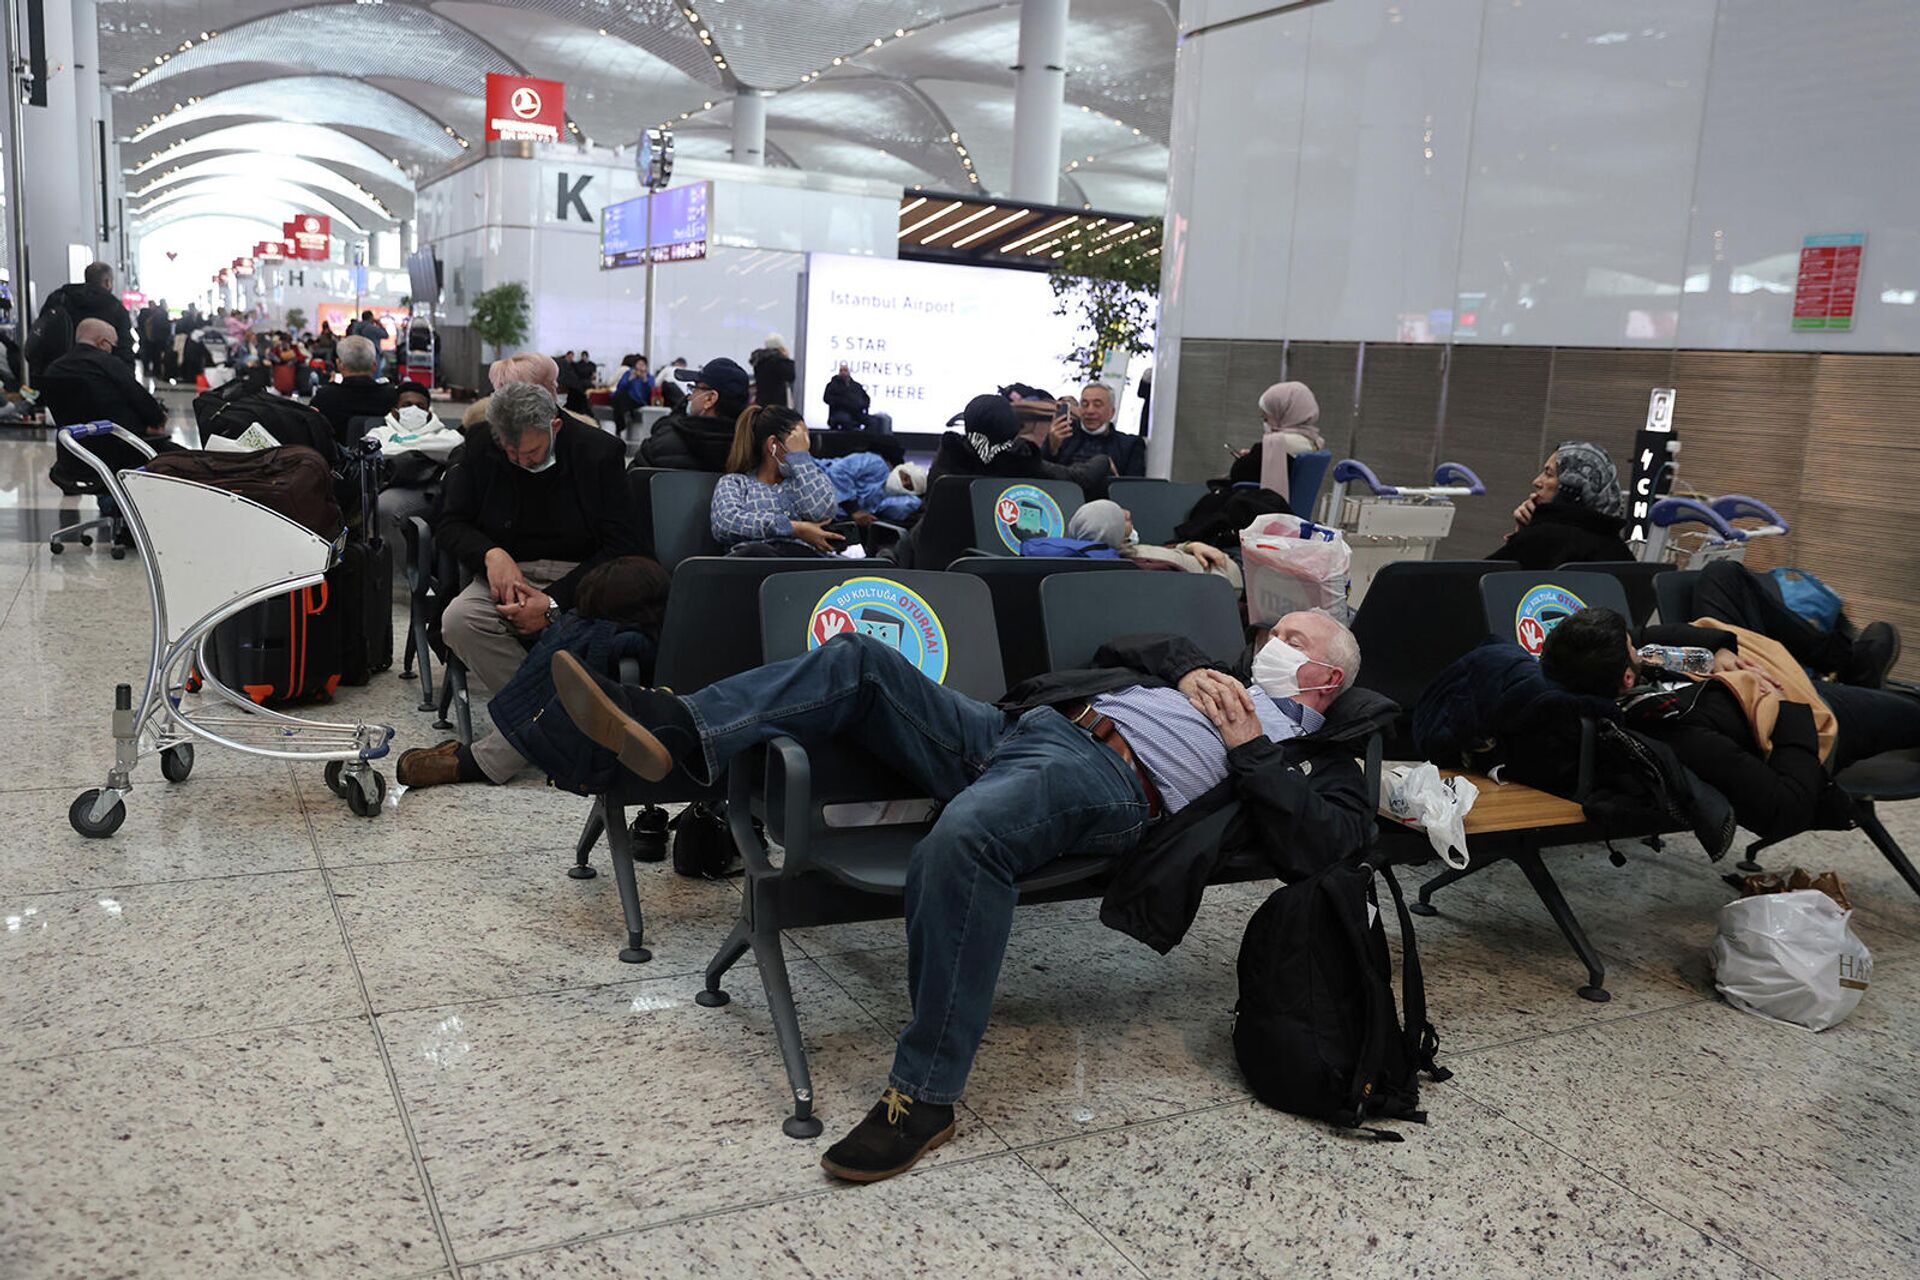 Застрявшие пассажиры ждут своих рейсов в аэропорту Стамбула, который приостанавливает полеты из-за сильного снегопада (25 января 2022). Турция - Sputnik Армения, 1920, 25.01.2022